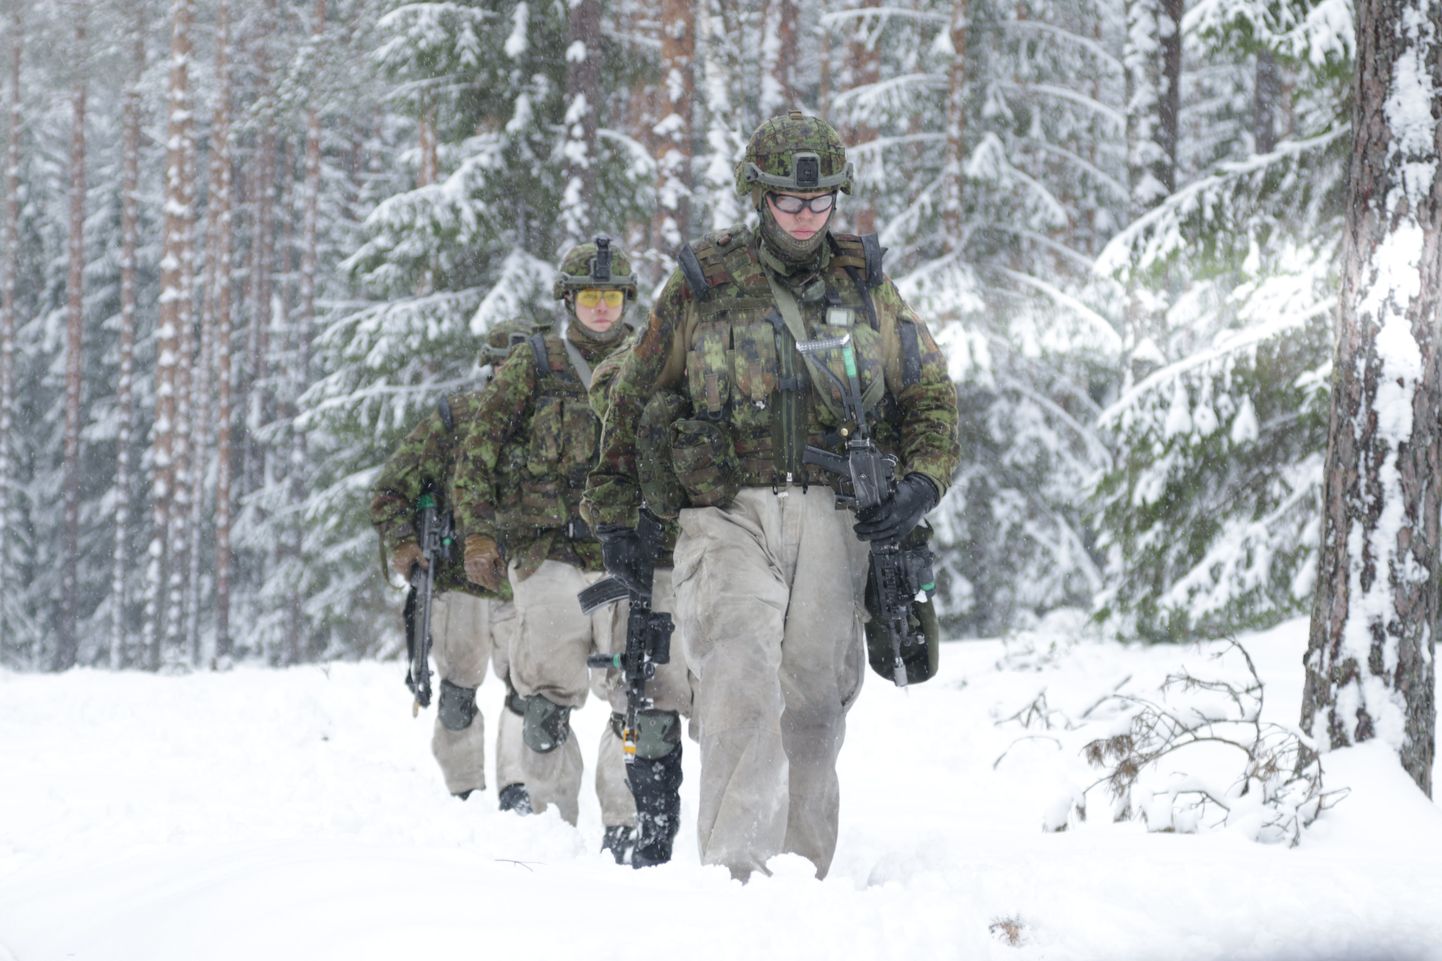 Kaitseväelased harjutasid sõjapidamist talvistes tingimustes.